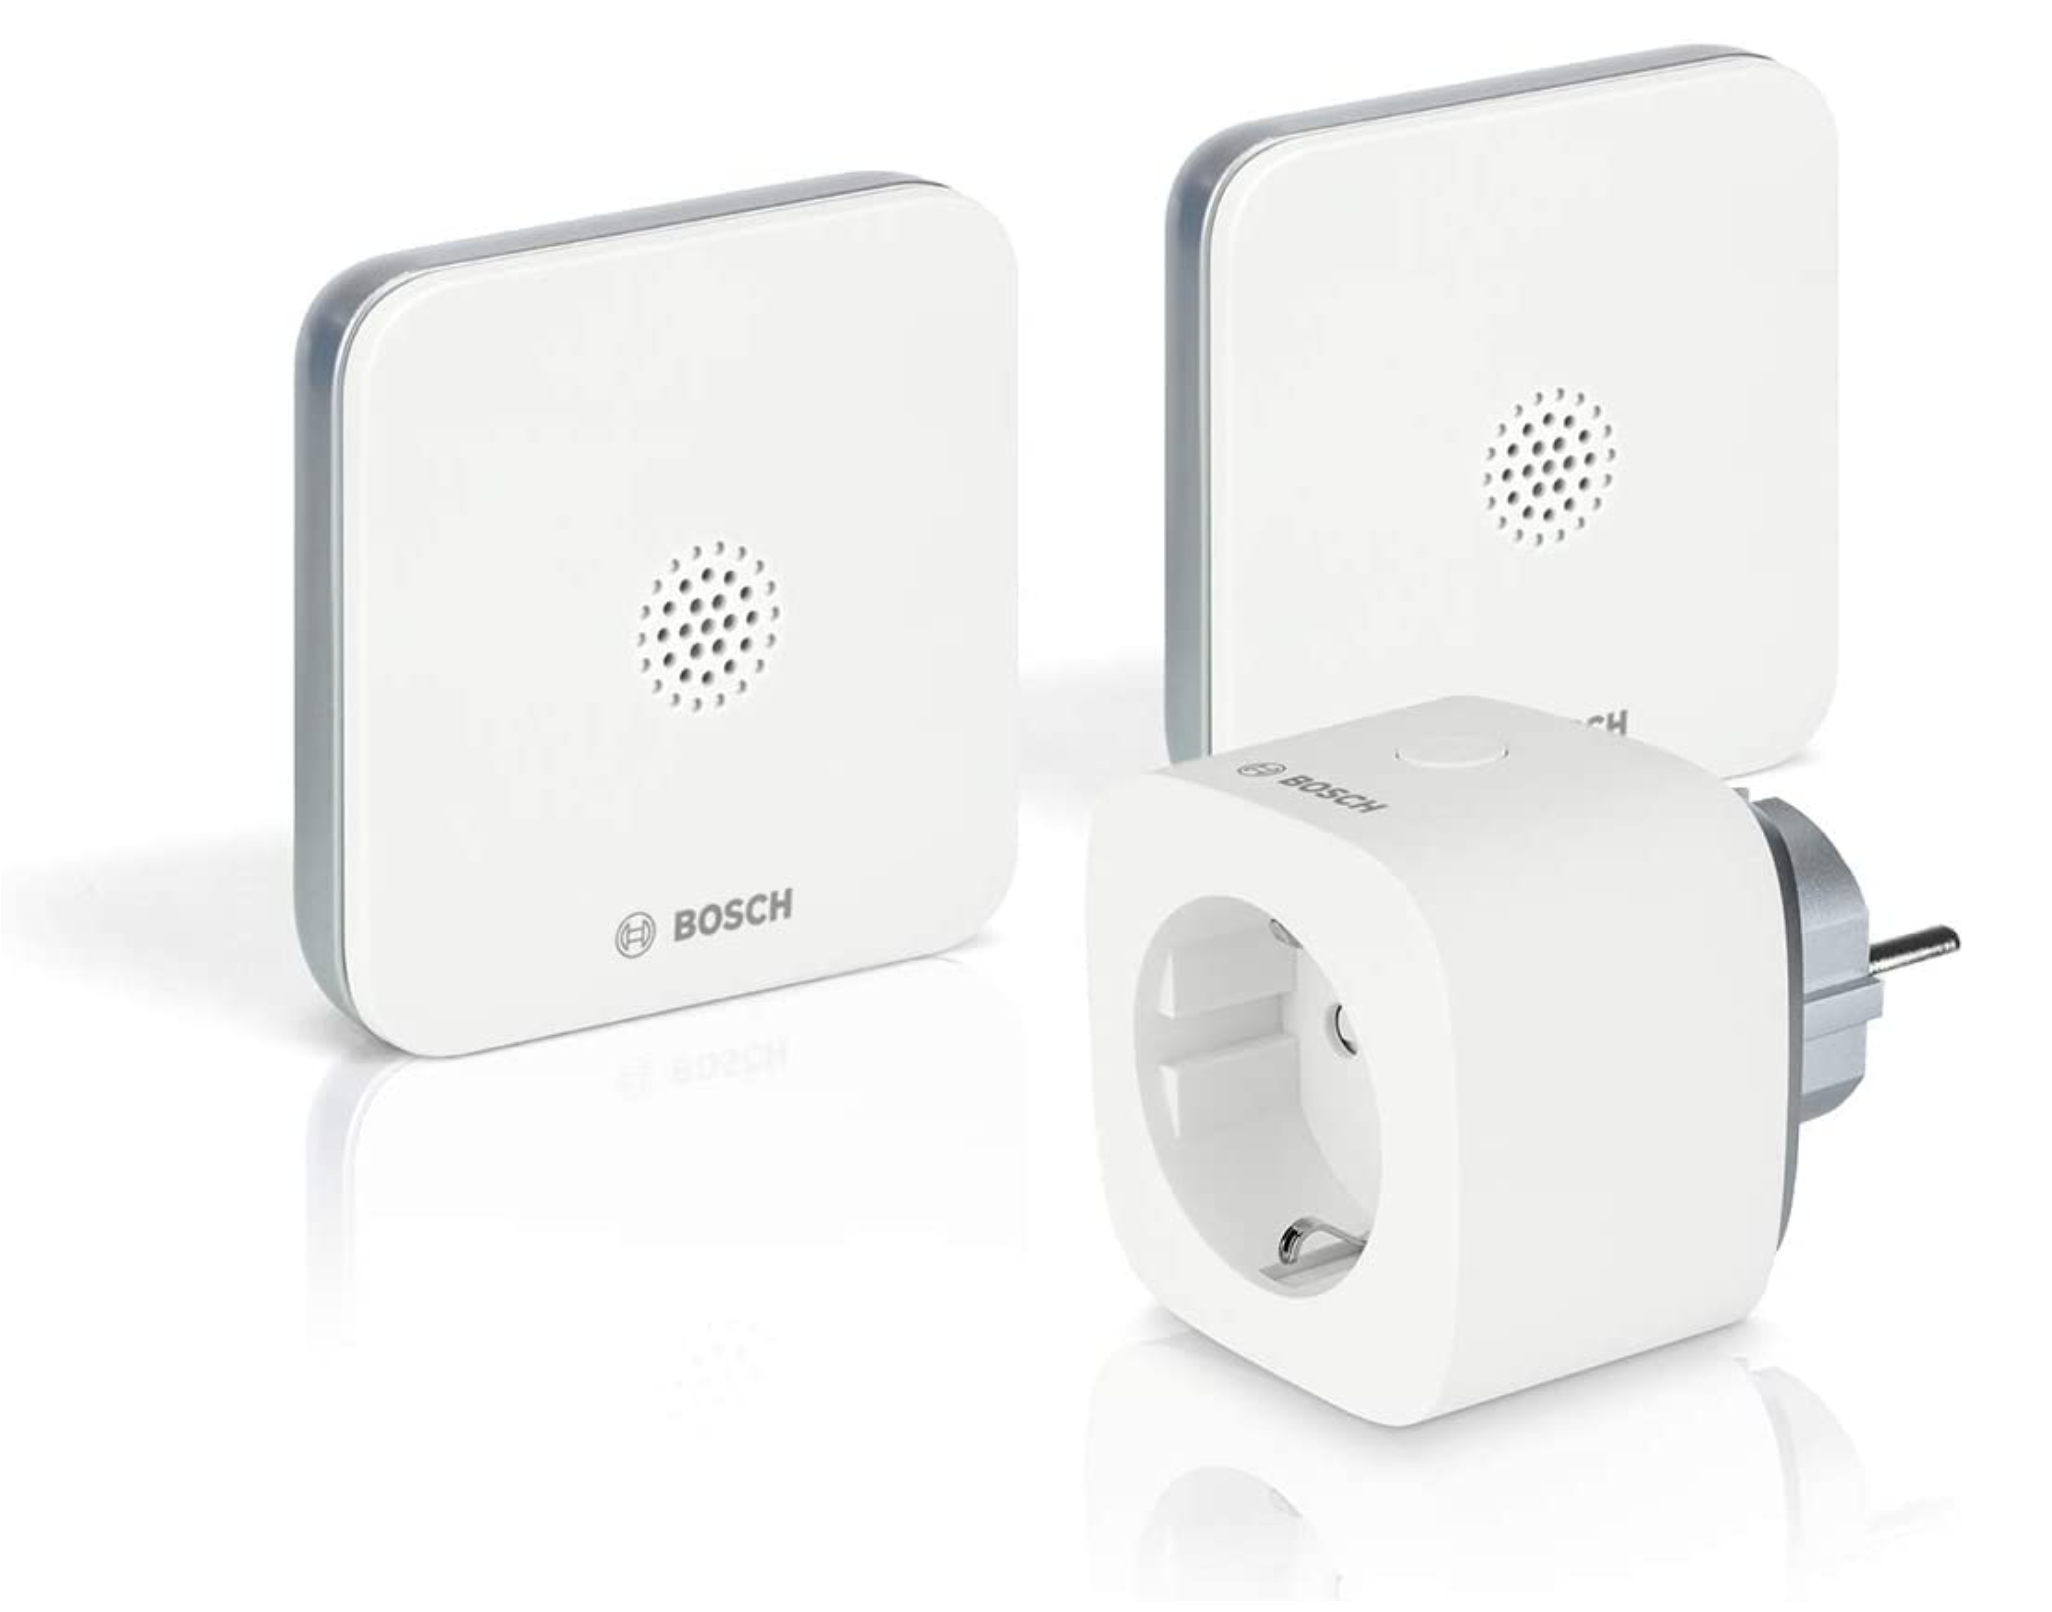 Bosch Smart Home Wassermelder Sicherheitspaket mit Funksignal-Verlängerung Mesch Shop